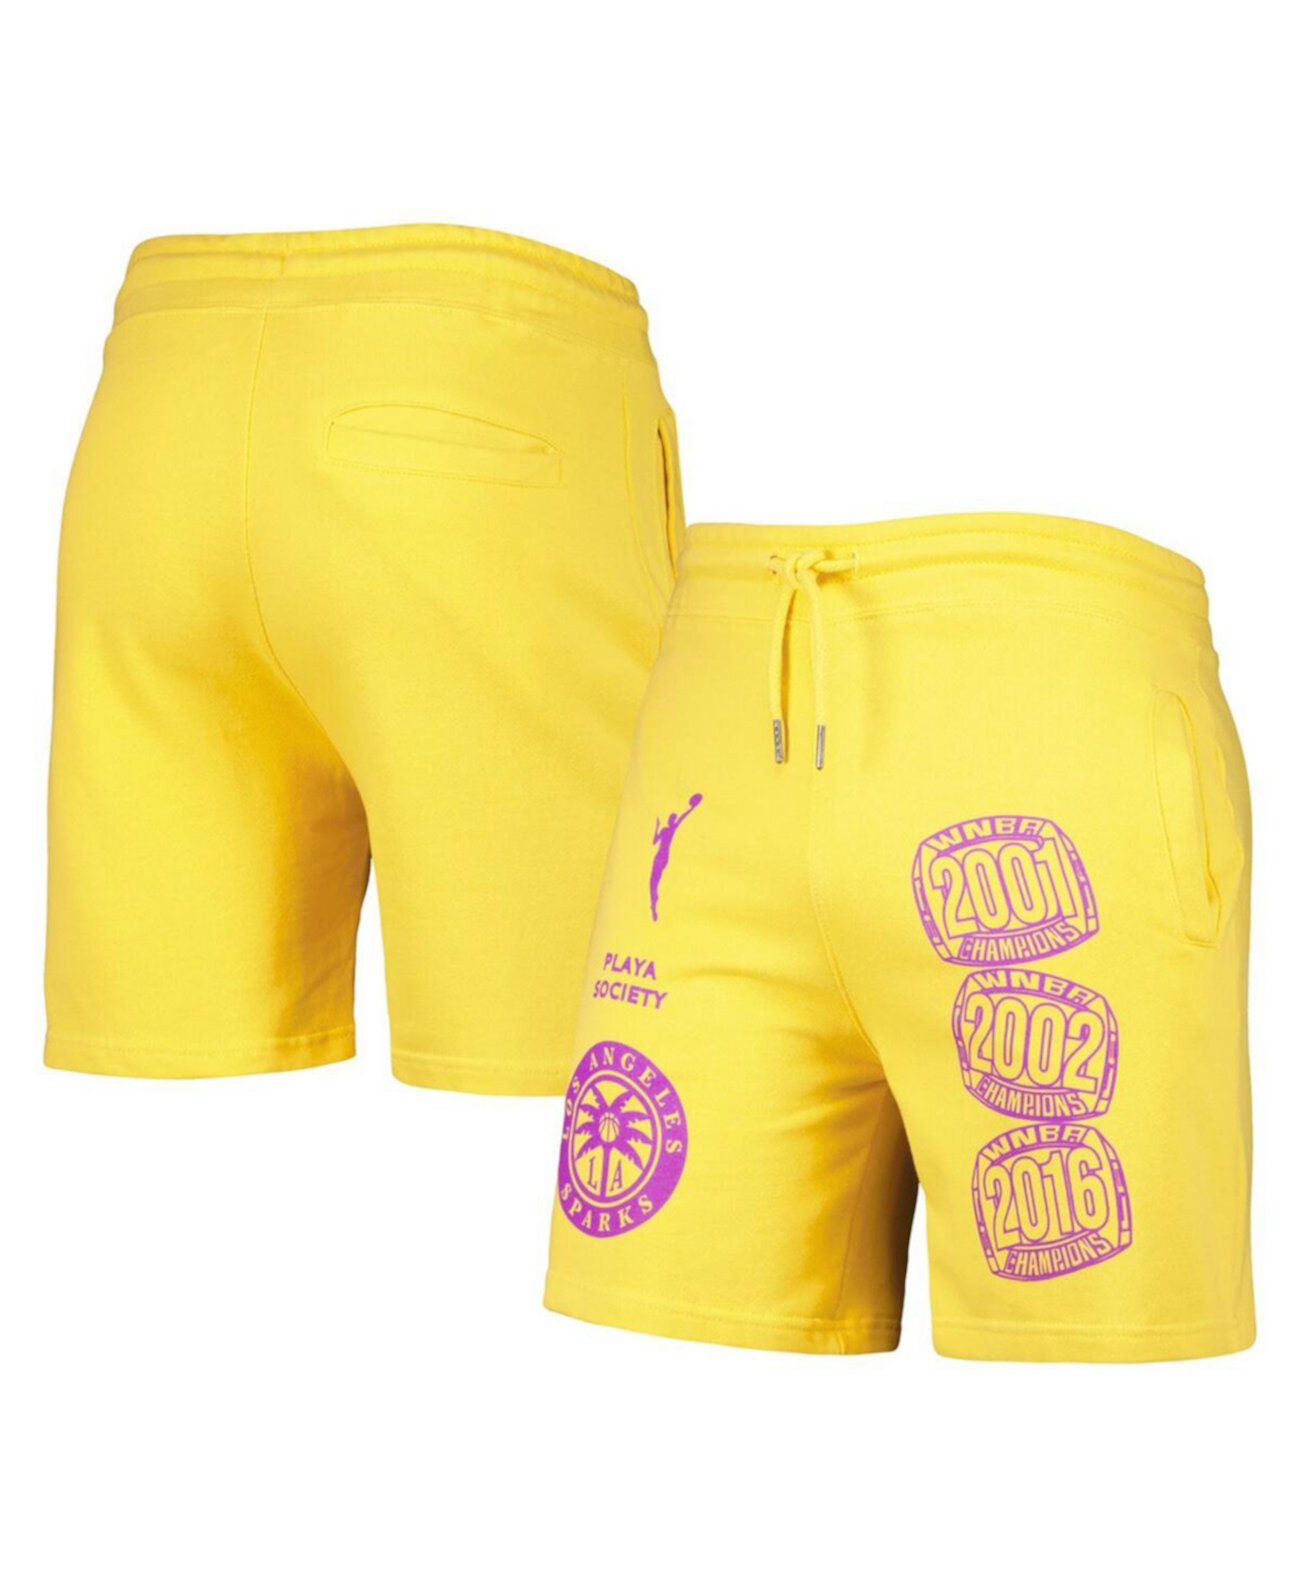 Мужские золотистые шорты с логотипом Los Angeles Sparks Legacy Playa Society